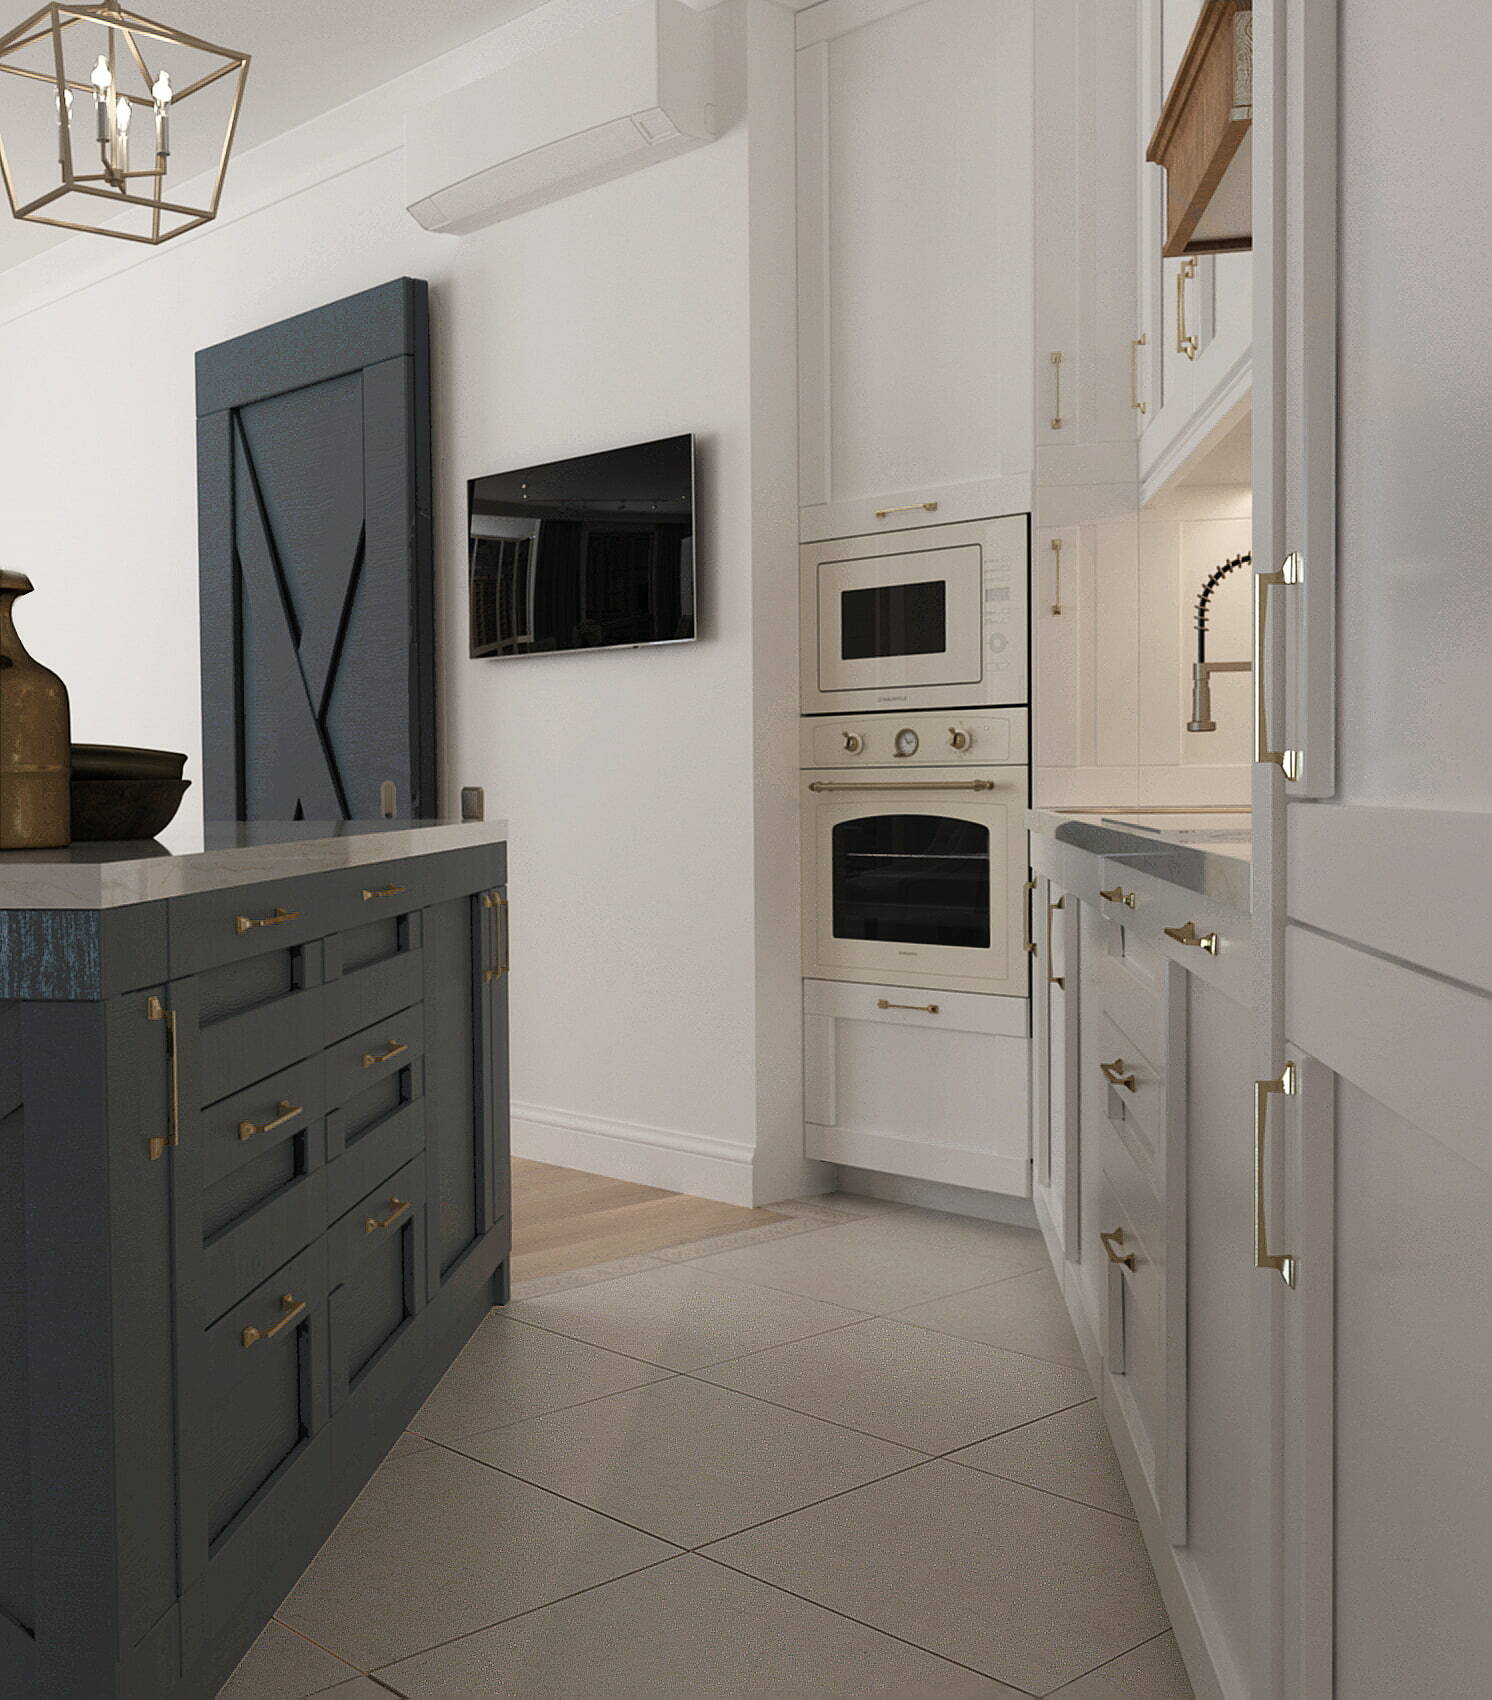 серая плитка на полу, уложенная по диагонали, синий кухонный остров, белый кухонный гарнитур, синяя дверь-купе, белая духовка